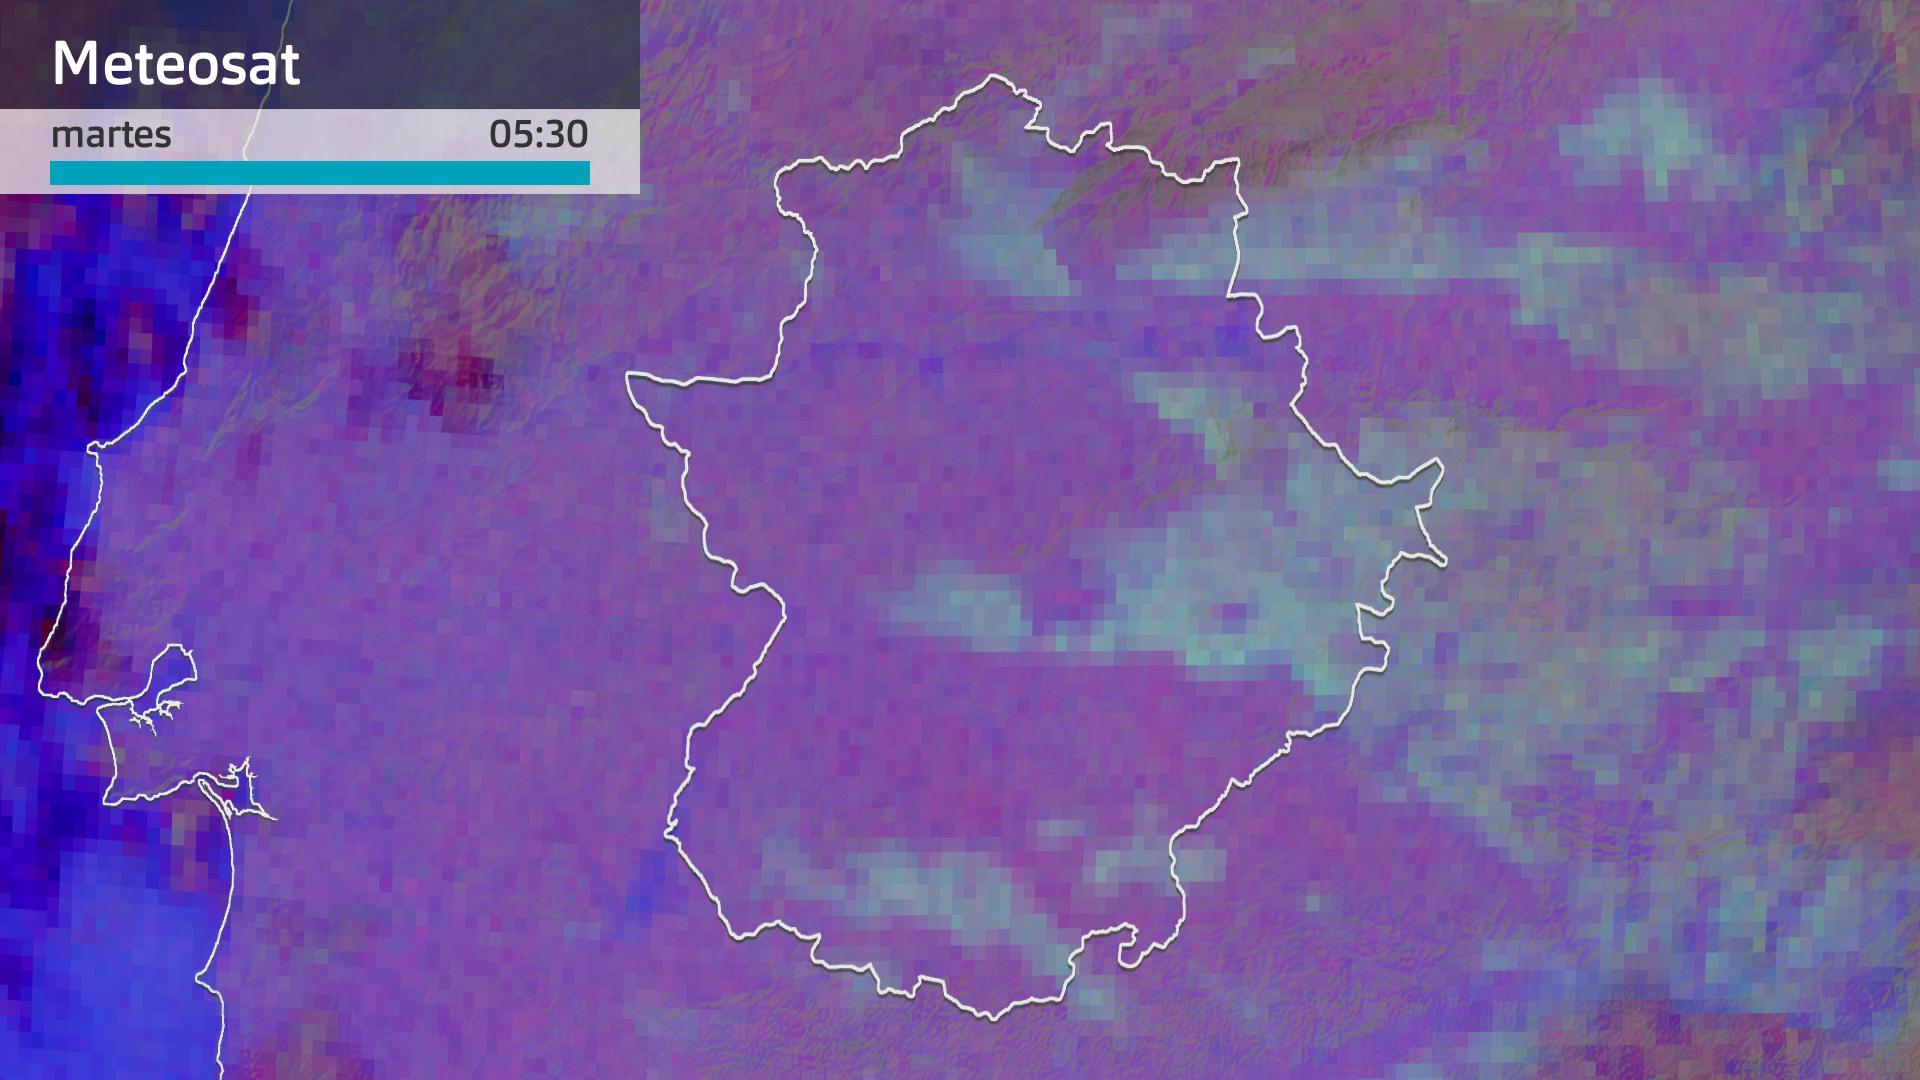 Imagen del Meteosat (RGBFog) martes 24 de octubre 5:30 h.